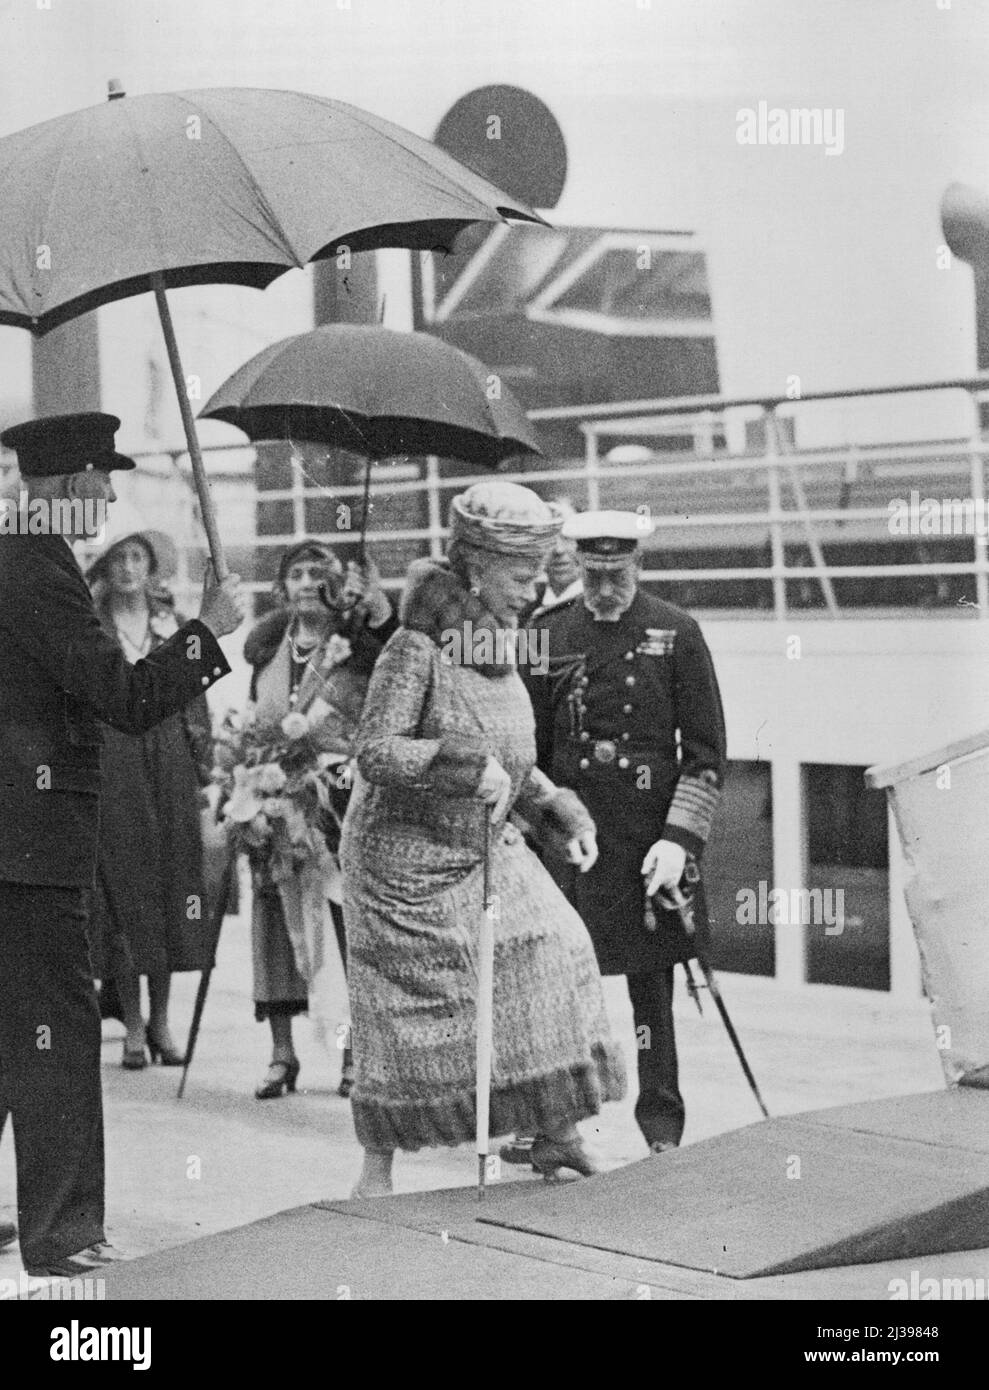 King apre il molo £2.000.000 -- il re e la regina a bordo del vaporetto 'King Gorge V' che ha fatto il vapore attraverso il molo. Il nuovo molo di £2.000.000 schermidahall, Glasgow, è stato aperto ieri dalle loro majesties il re e la regina. Luglio 11, 1931. (Foto di LNA). Foto Stock